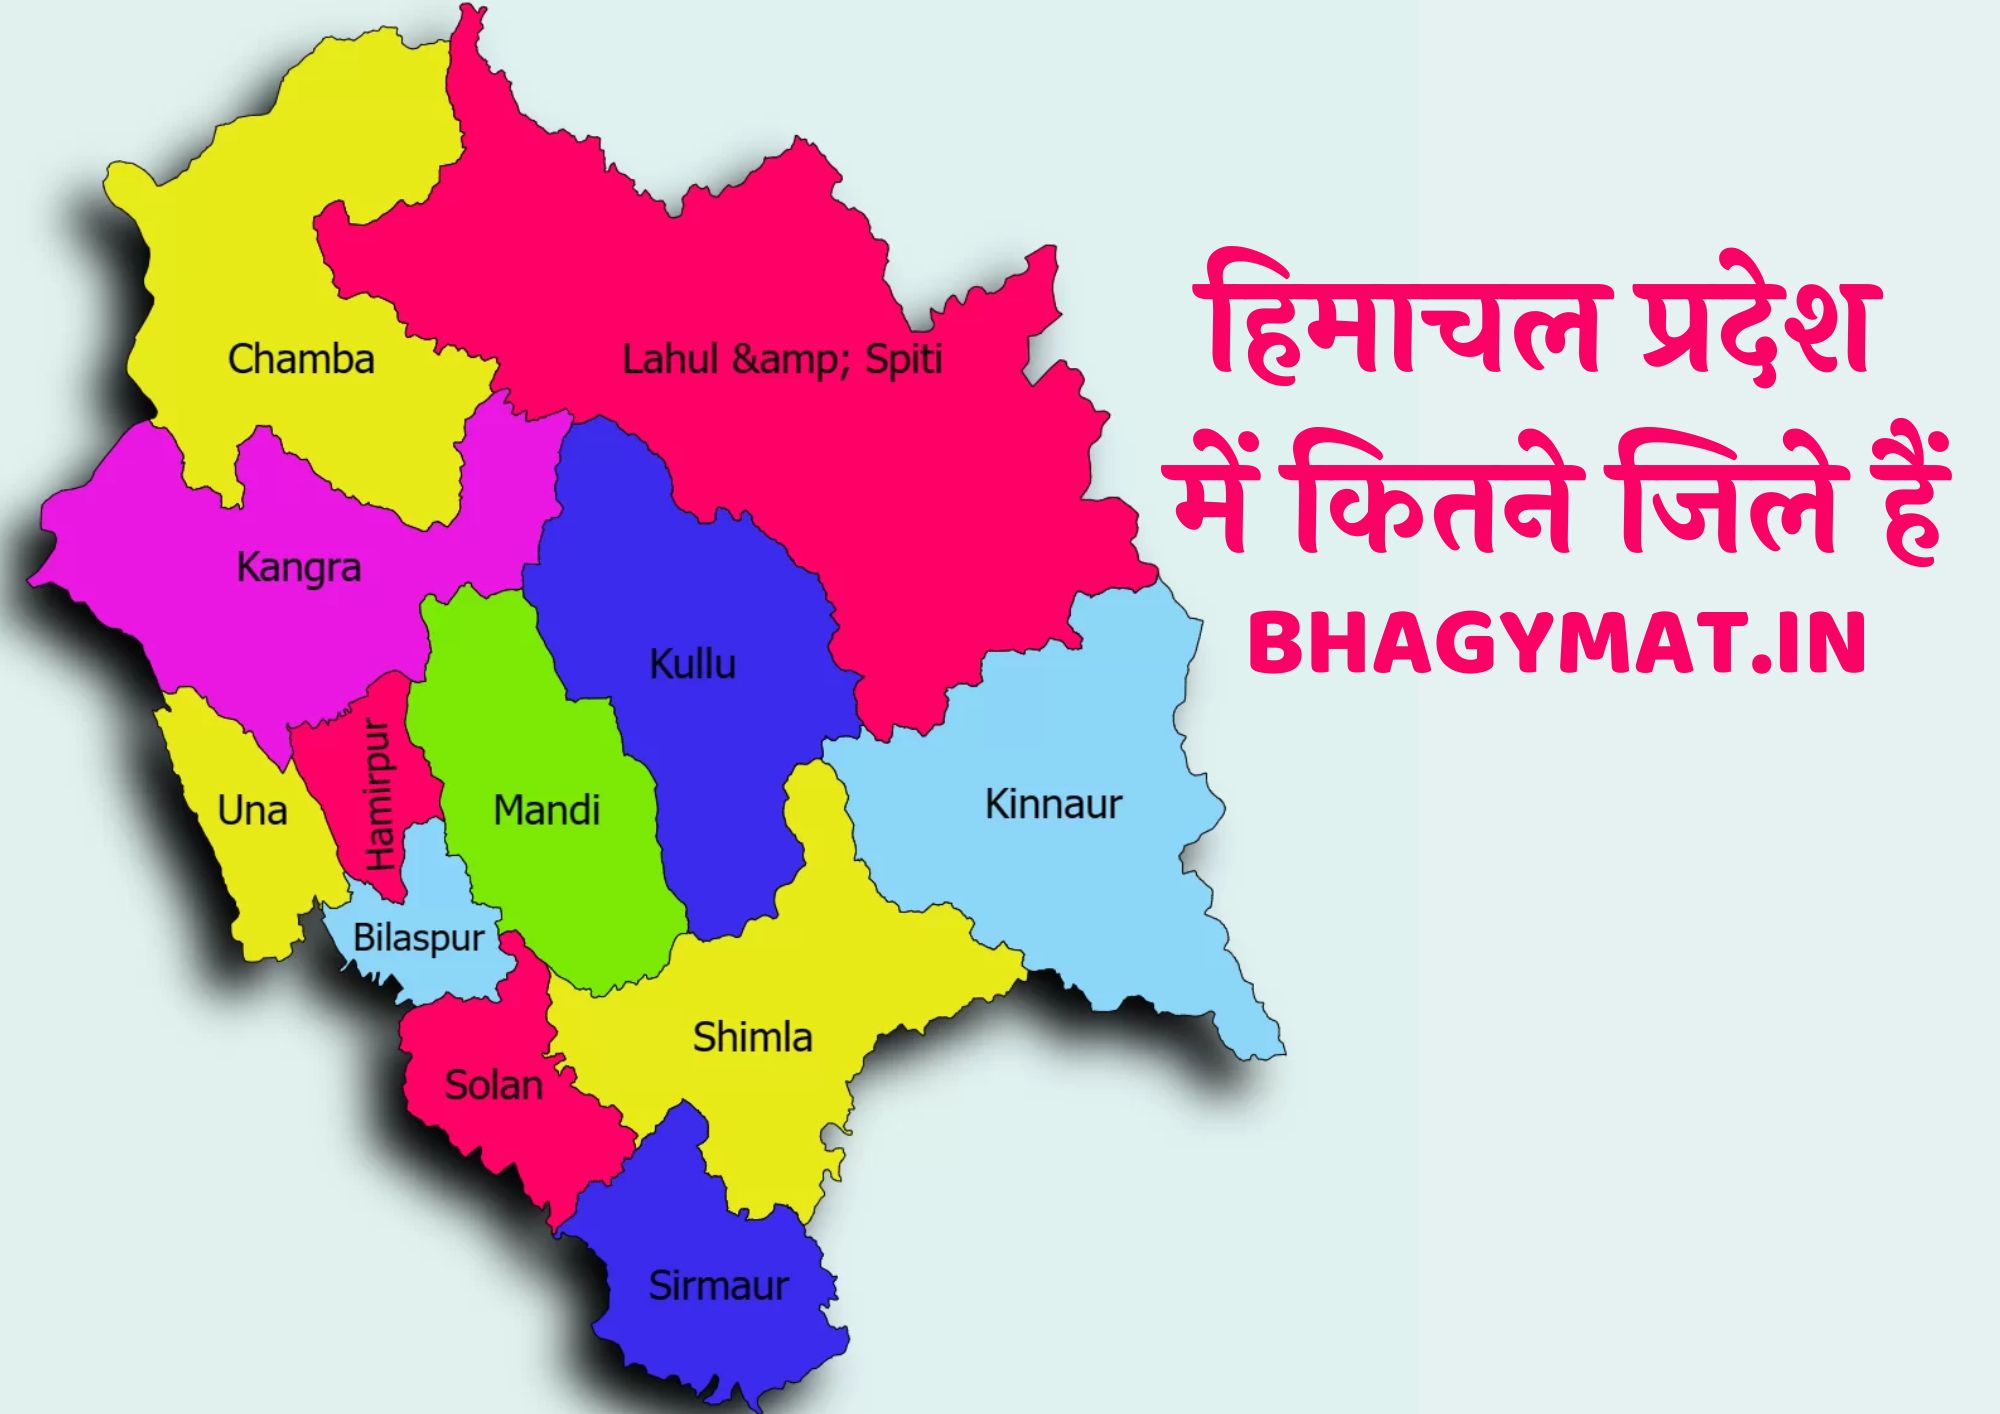 हिमाचल प्रदेश में कितने जिले हैं और उनके नाम, हिमाचल प्रदेश में कितने राज्य हैं?